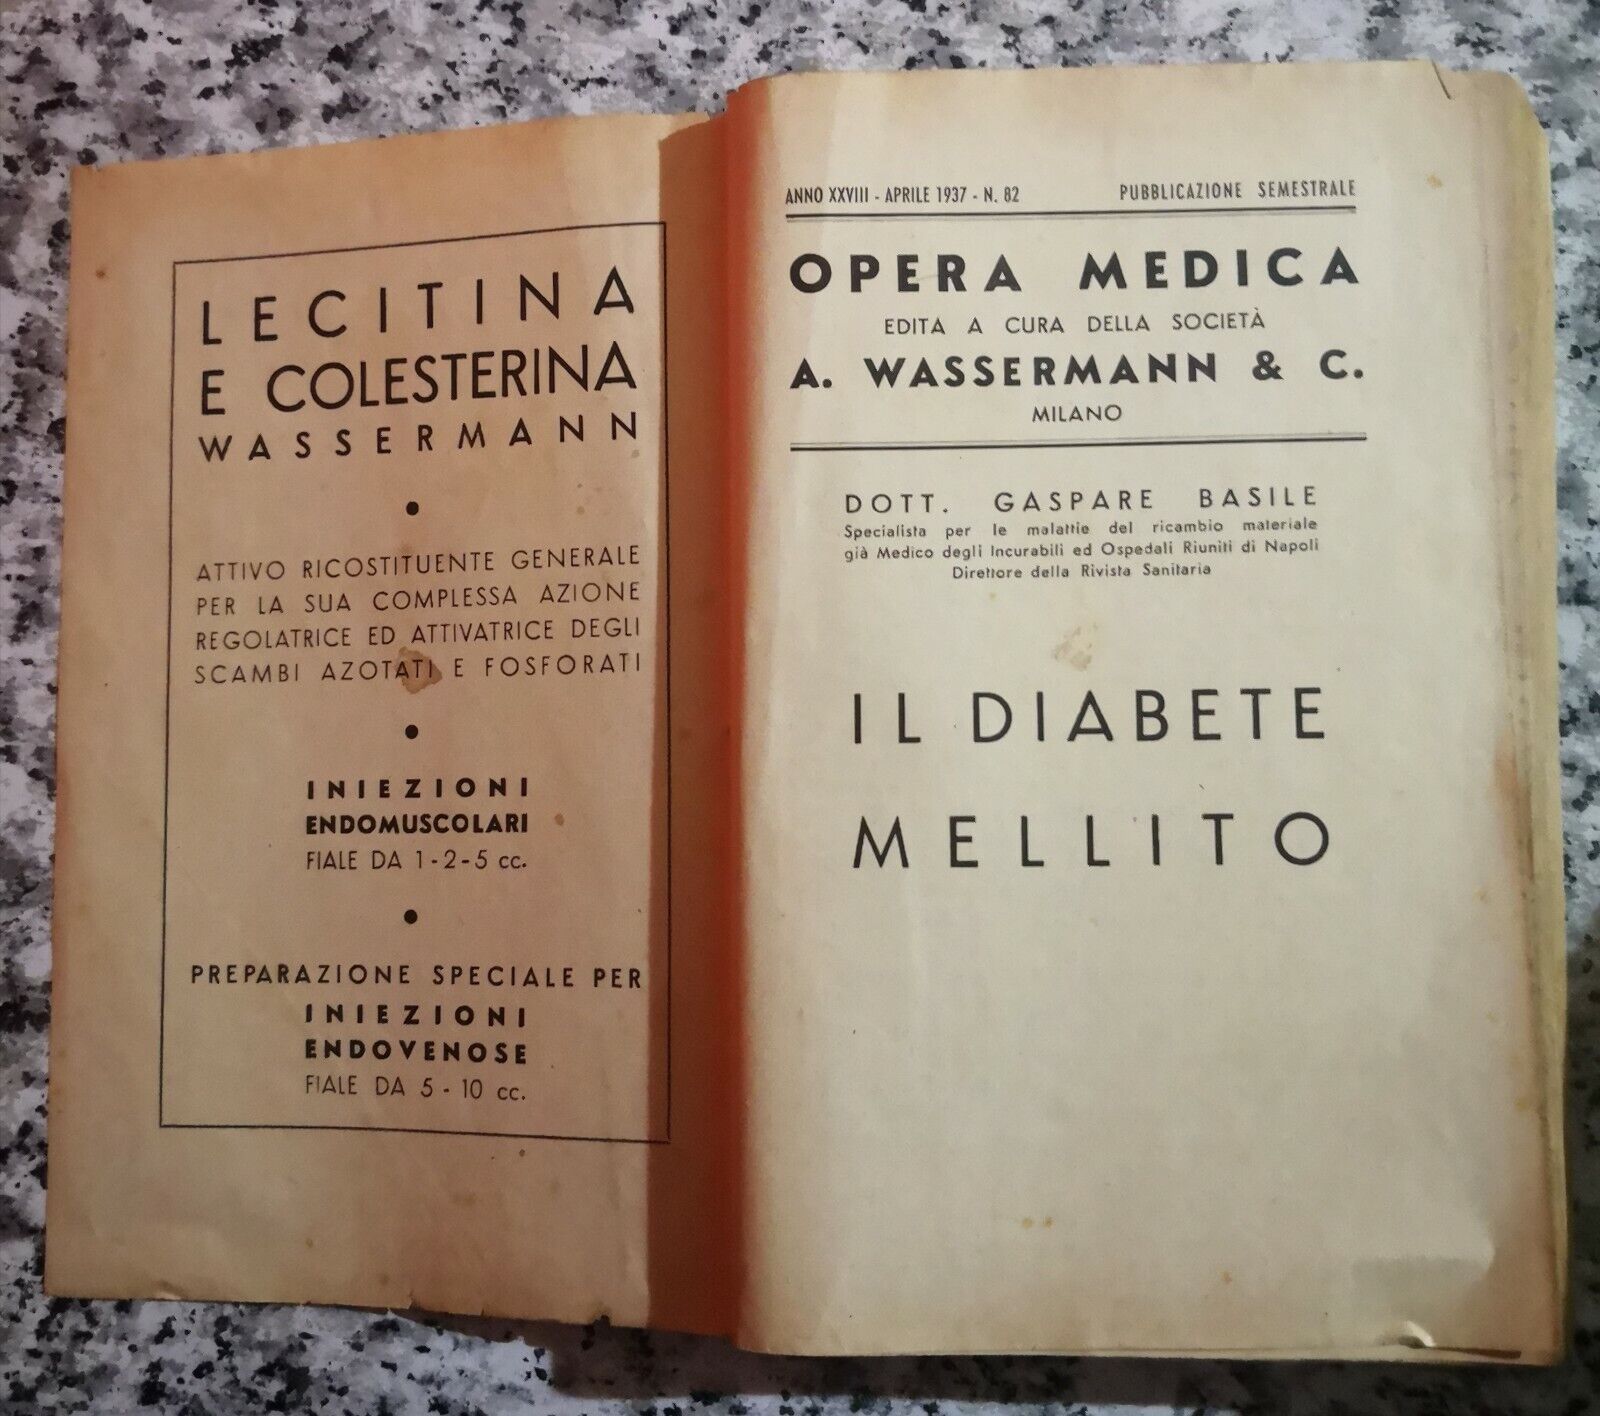  Opera medica ,il diabete mellito di Dott Gaspare Basile,  1937, Ed. Sormani -F